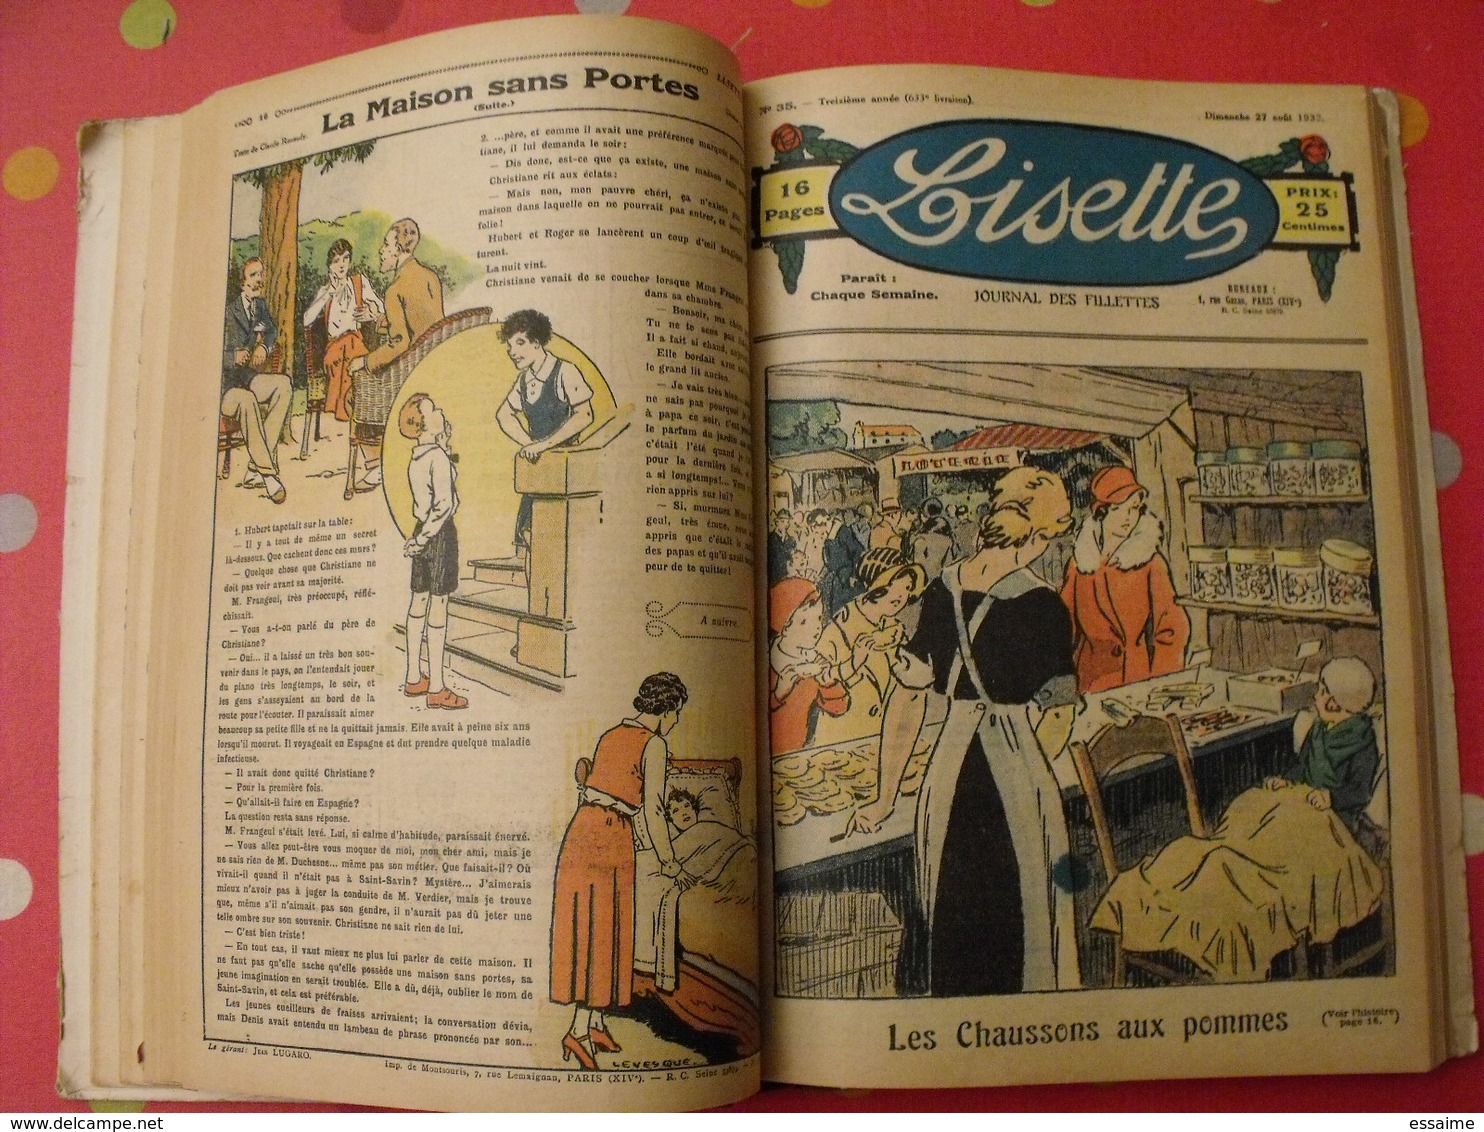 Lisette, album 13 XIII. 1933. recueil reliure. le rallic levesque maitrejean cuvillier bourdin dot petite annie mc clure